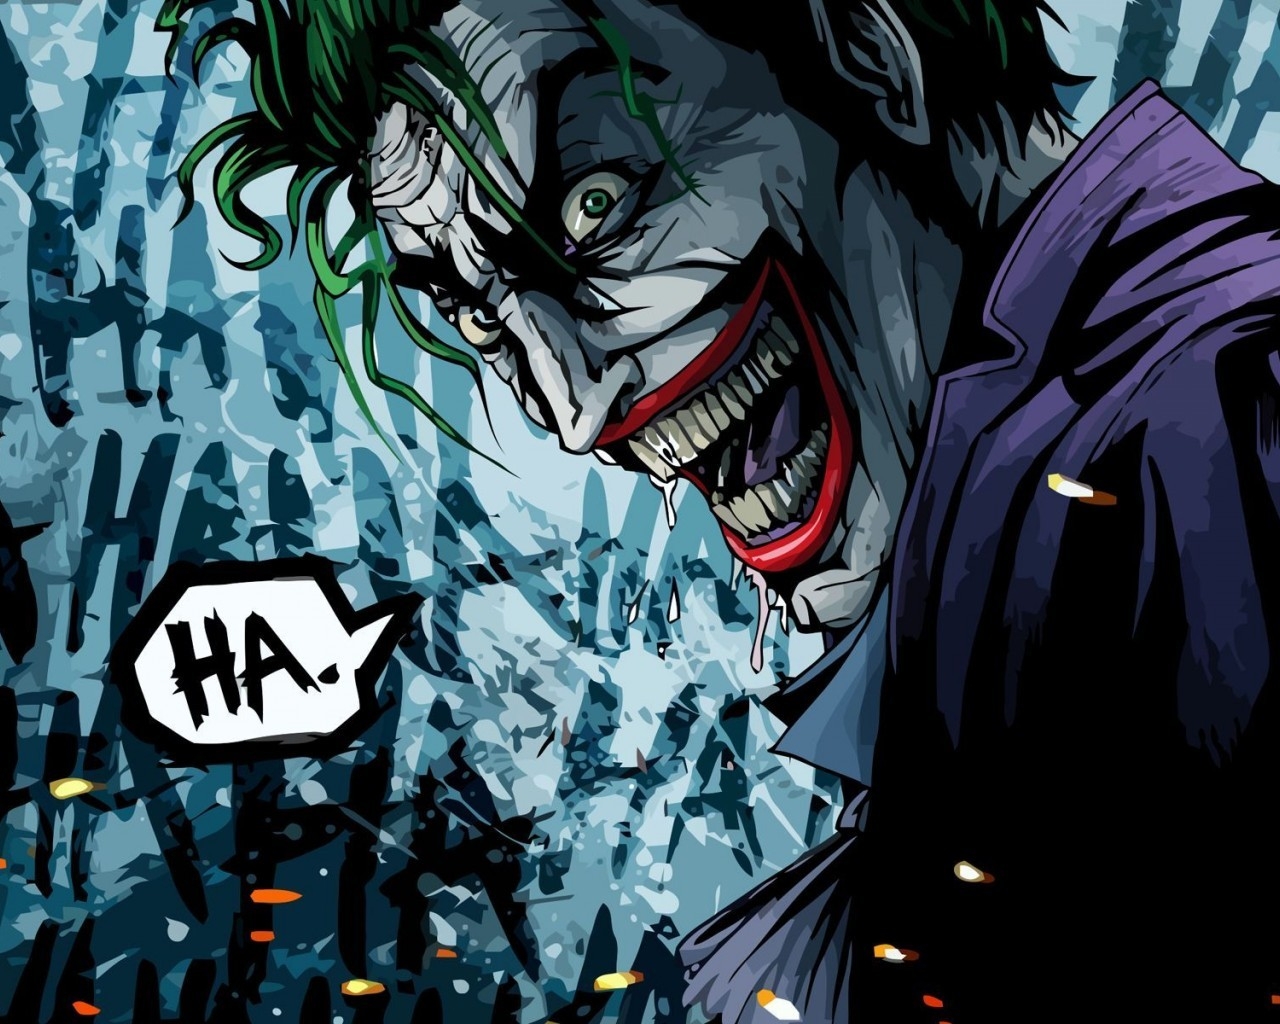 Joker HA for 1280 x 1024 resolution